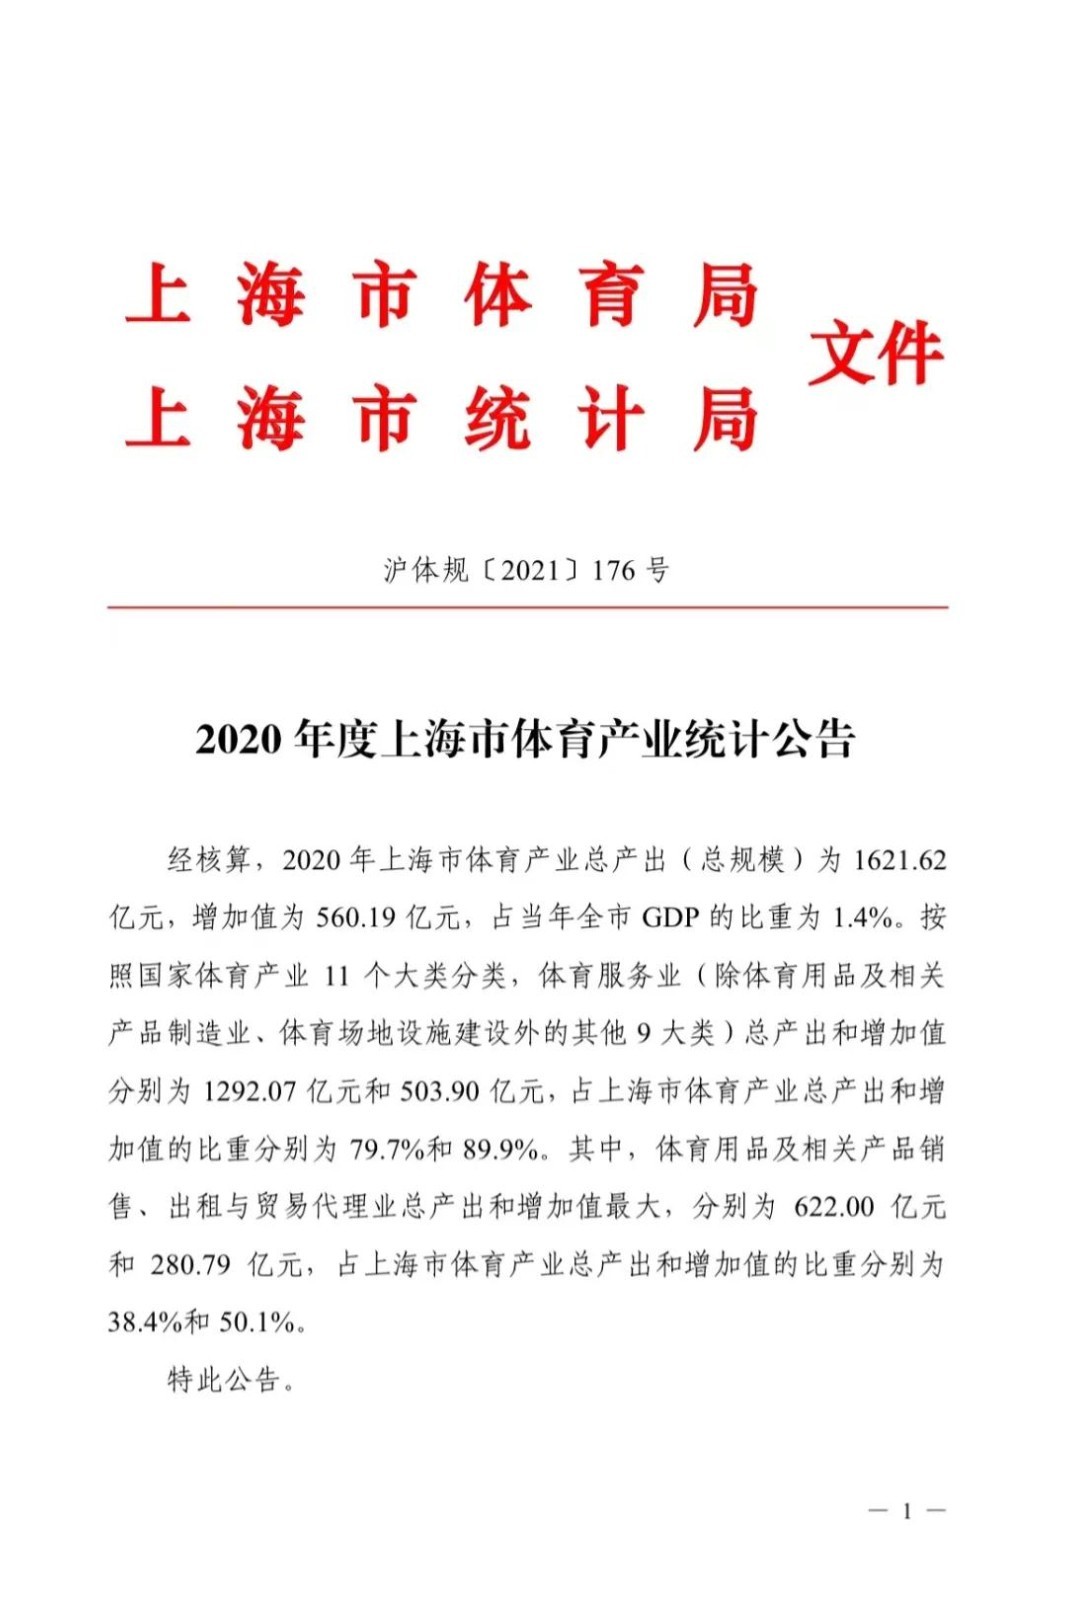 上海2020年体育产业总规模为1621亿元